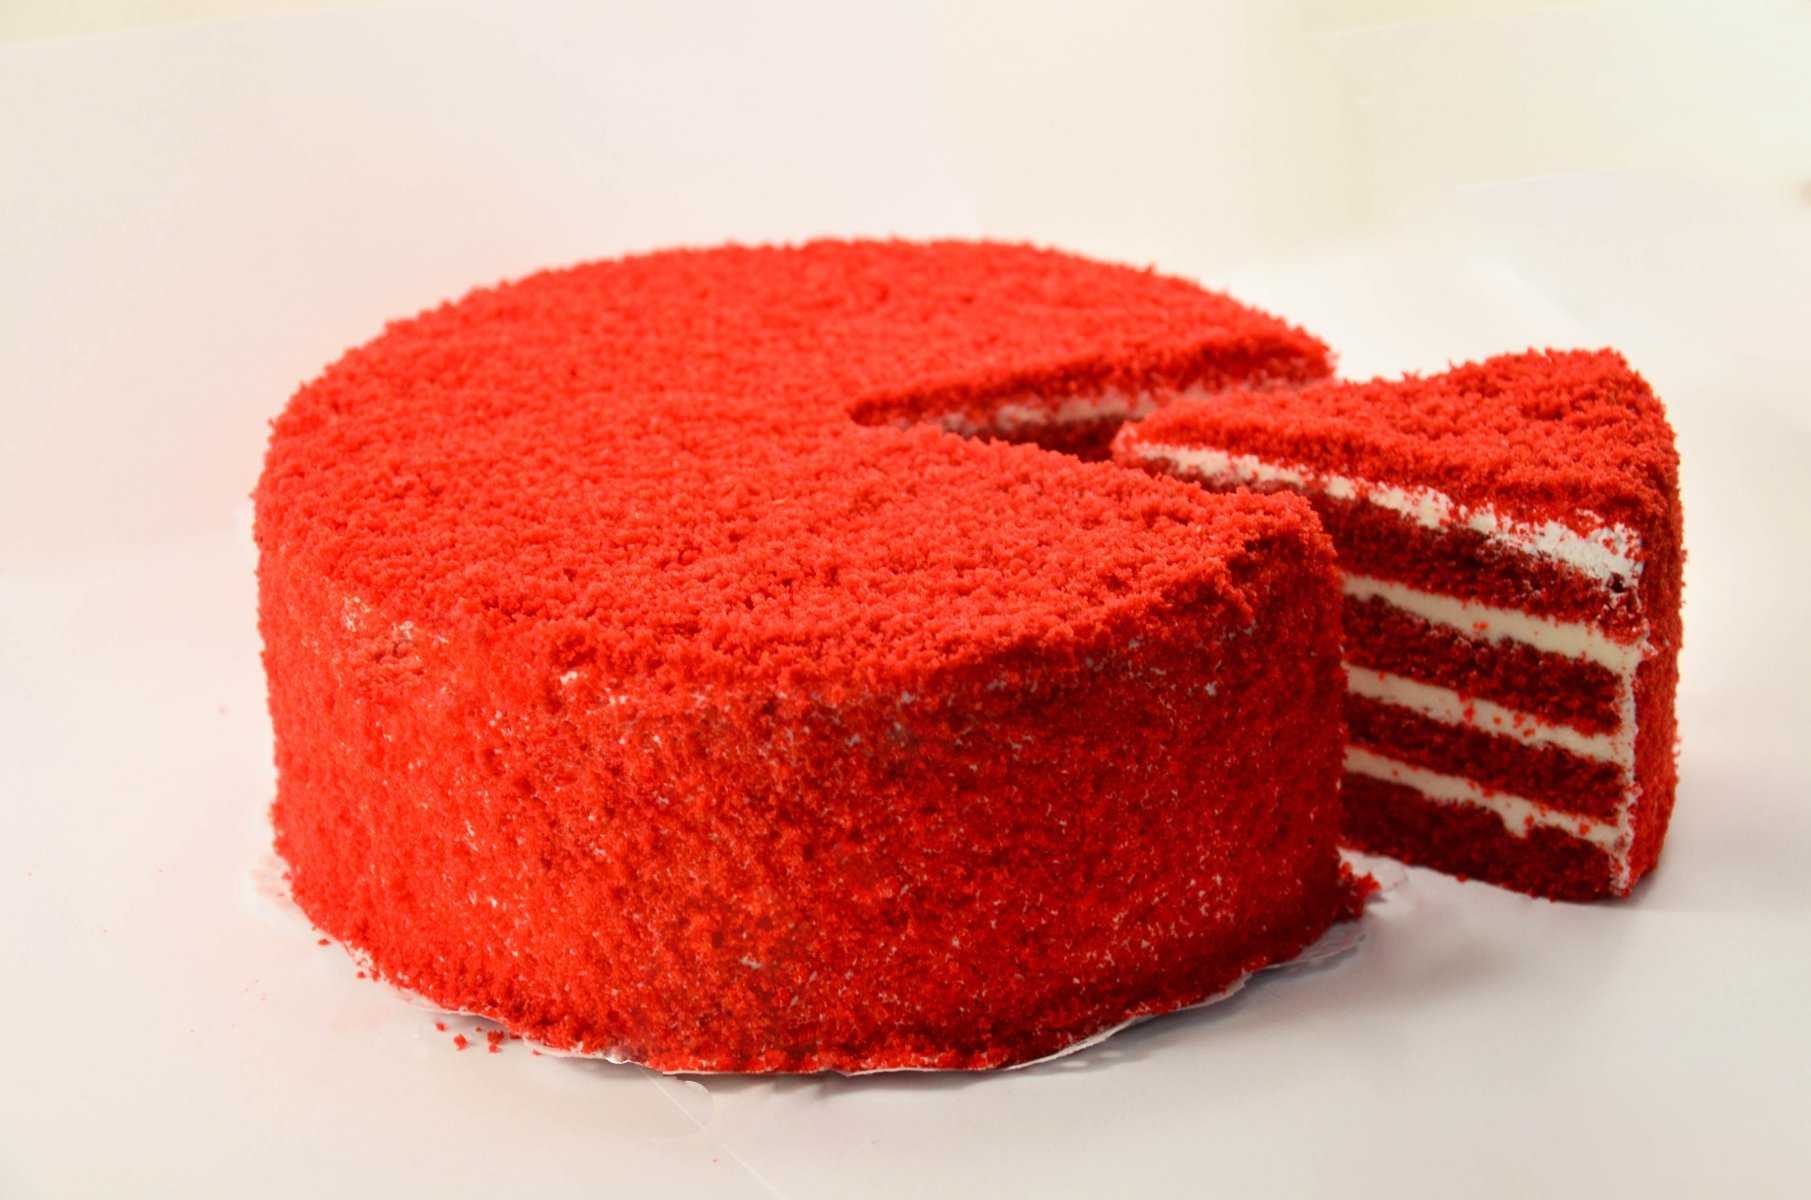 Торт красный бархат в домашних условиях | оригинальный рецепт